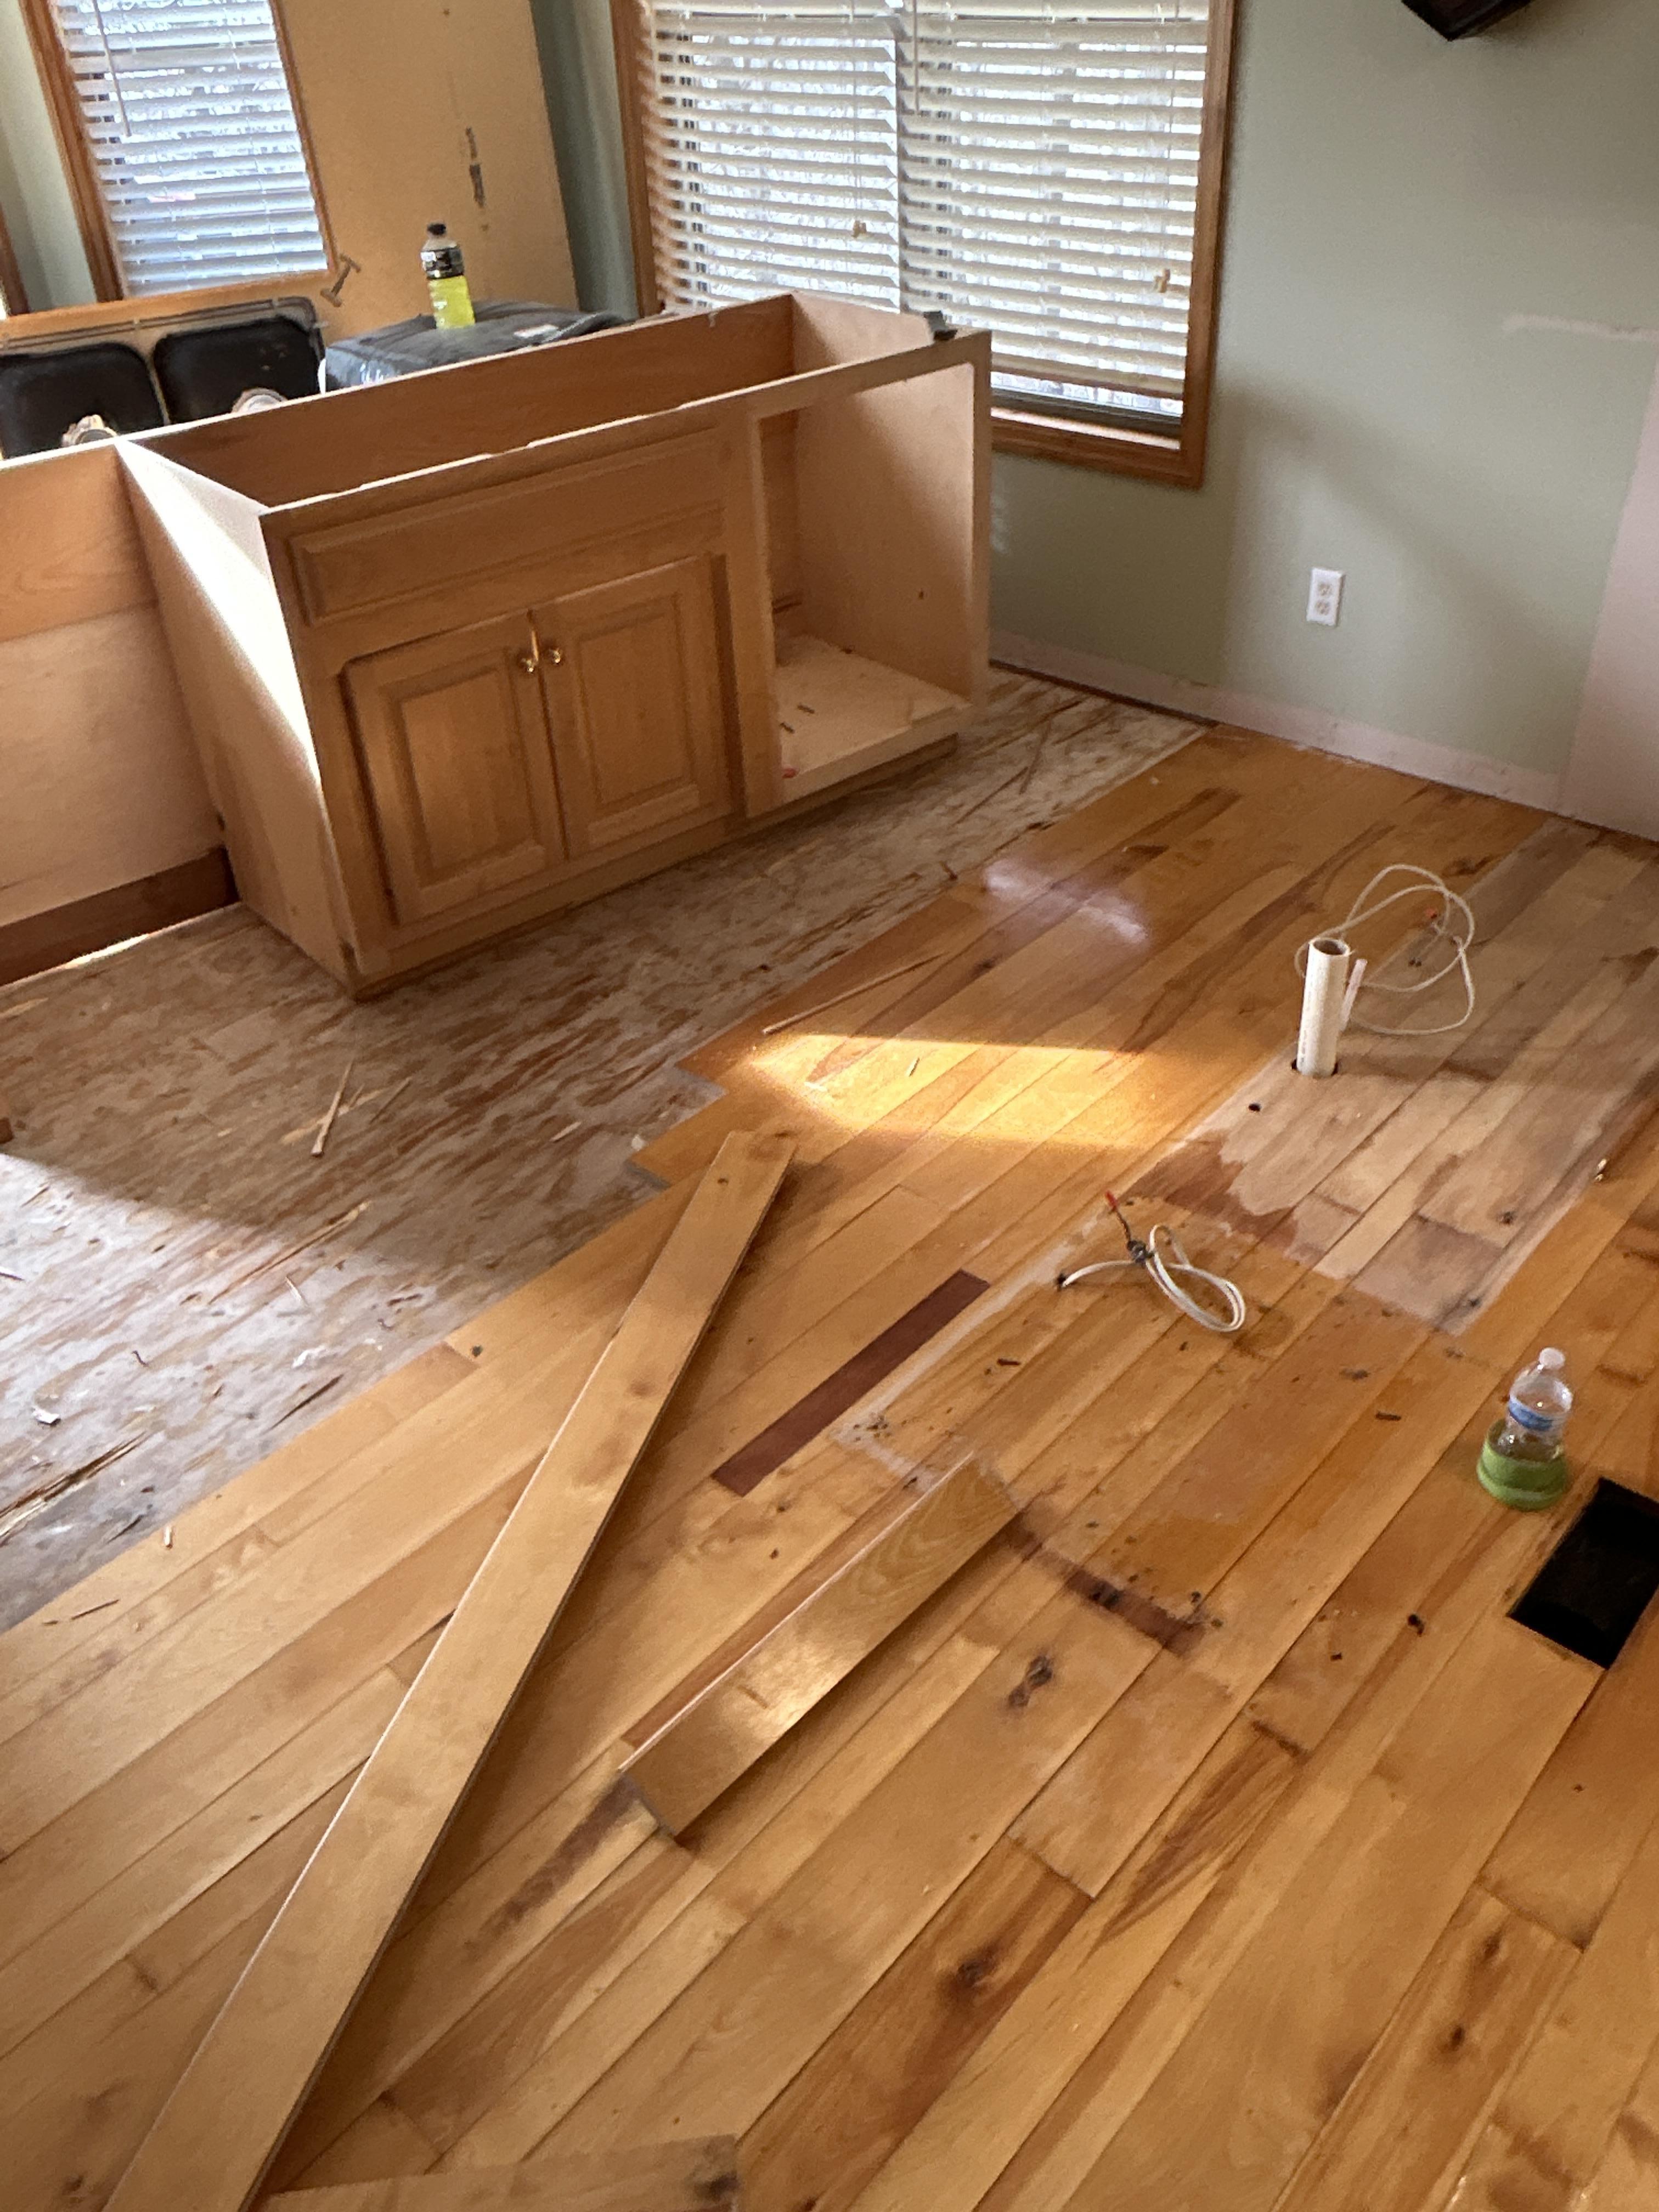 Damaged floor in kitchen